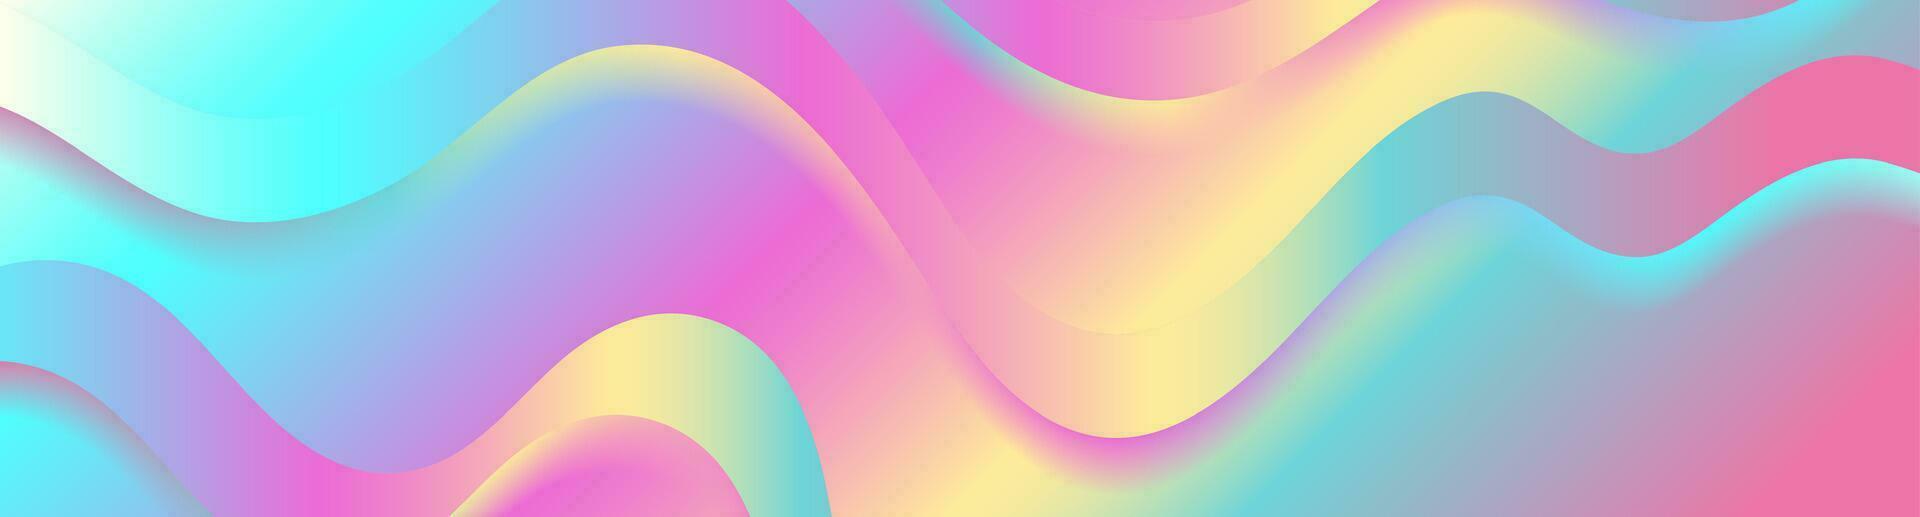 kleurrijk holografische abstract vloeistof golven achtergrond vector